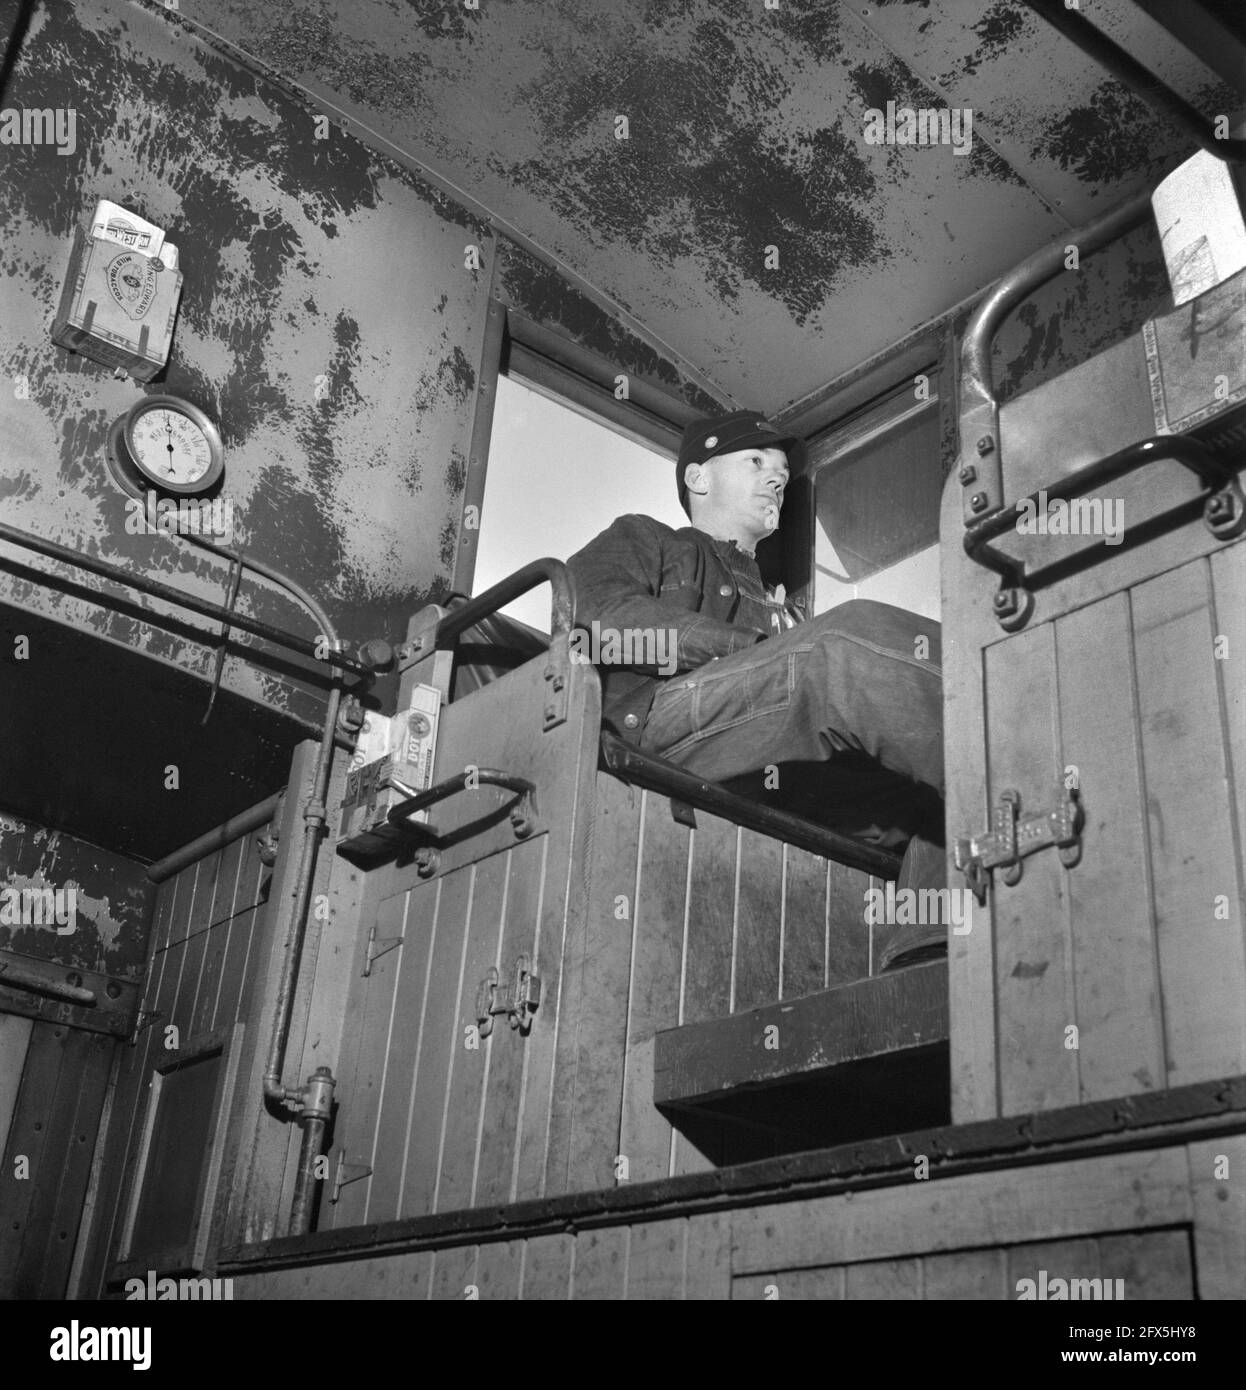 Train d'observation de Brakeman arrière de Cupola, Atchison, Topeka et Santa Fe Railroad, entre Chicago et Chillicothe, Illinois, États-Unis, Jack Delano, U.S. Office of War information, mars 1943 Banque D'Images